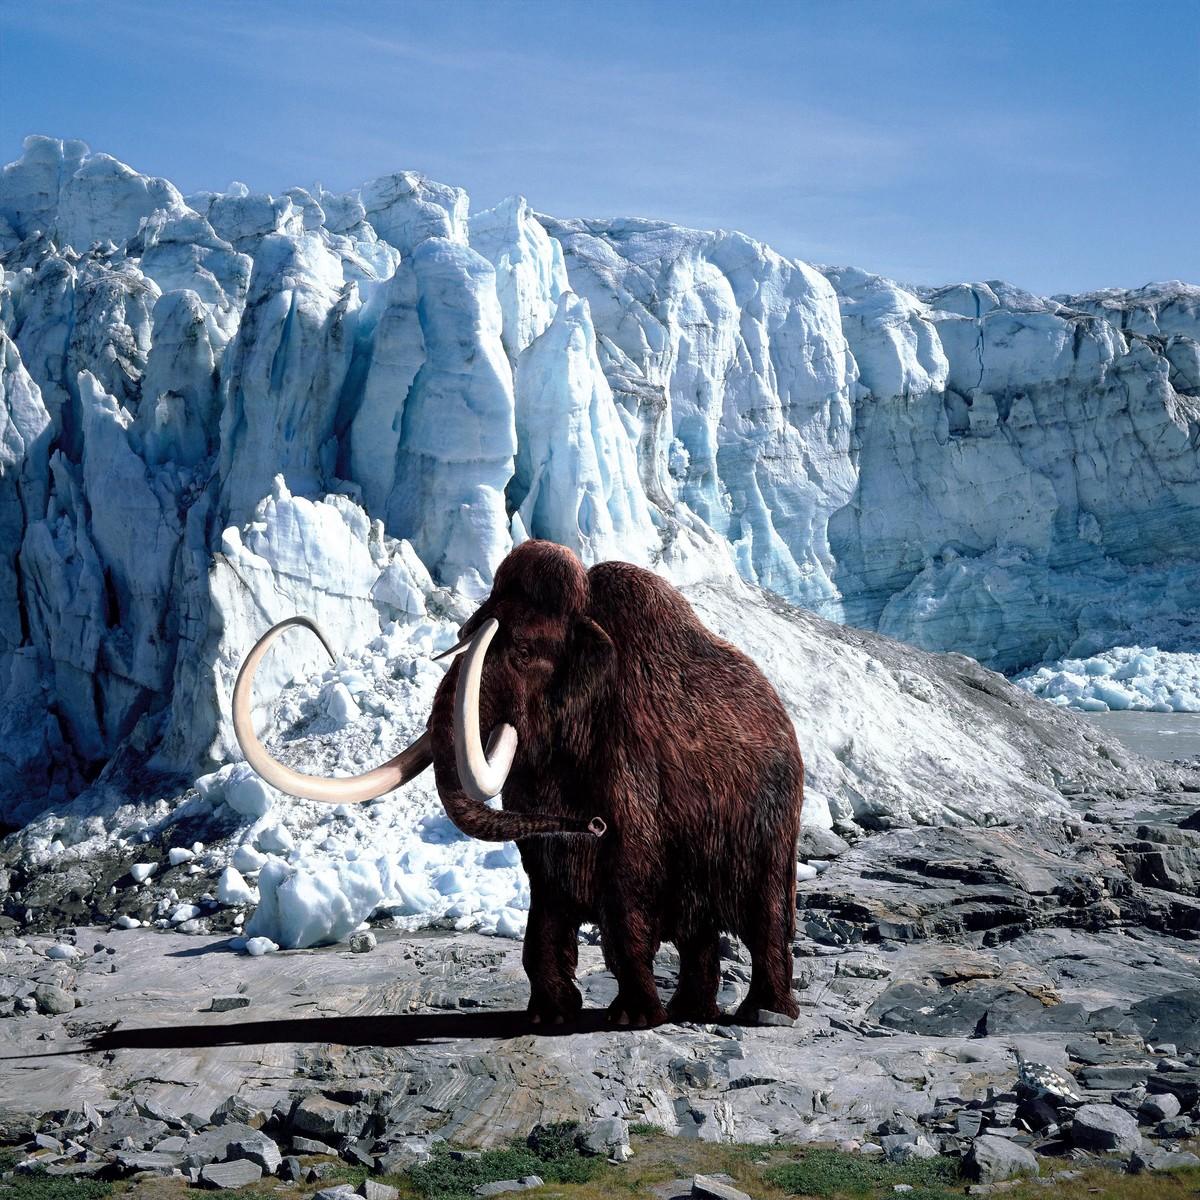 Montage photographique d'une mammouth devant une falaise de glace.